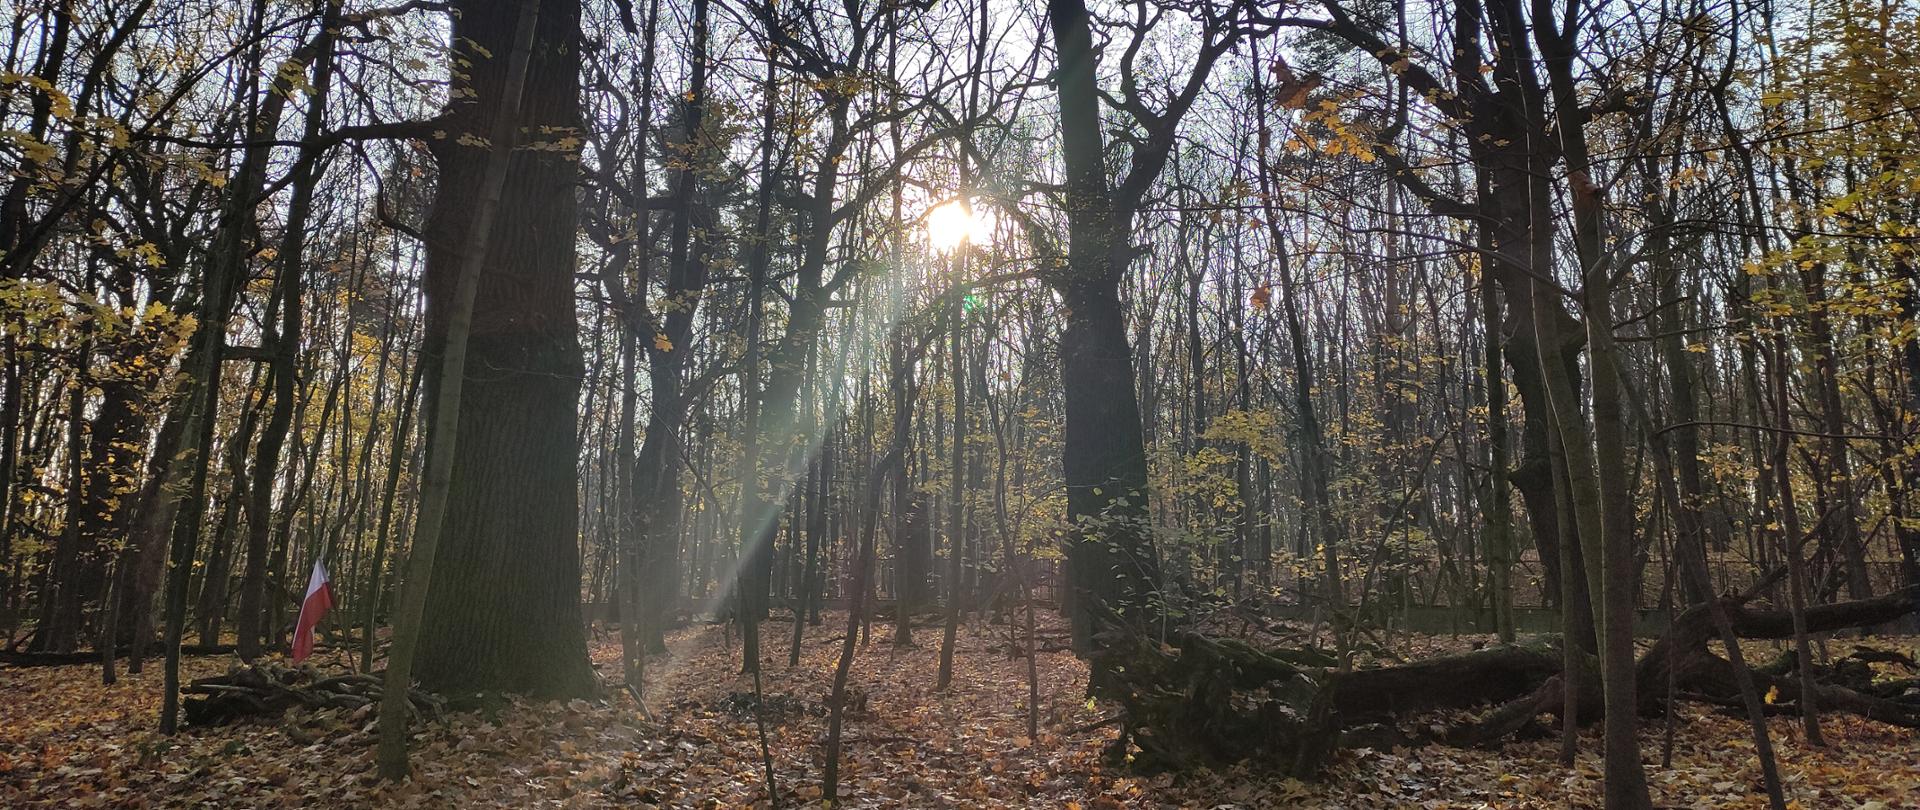 Jesienny las, słońce prześwieca między gałęziami drzew